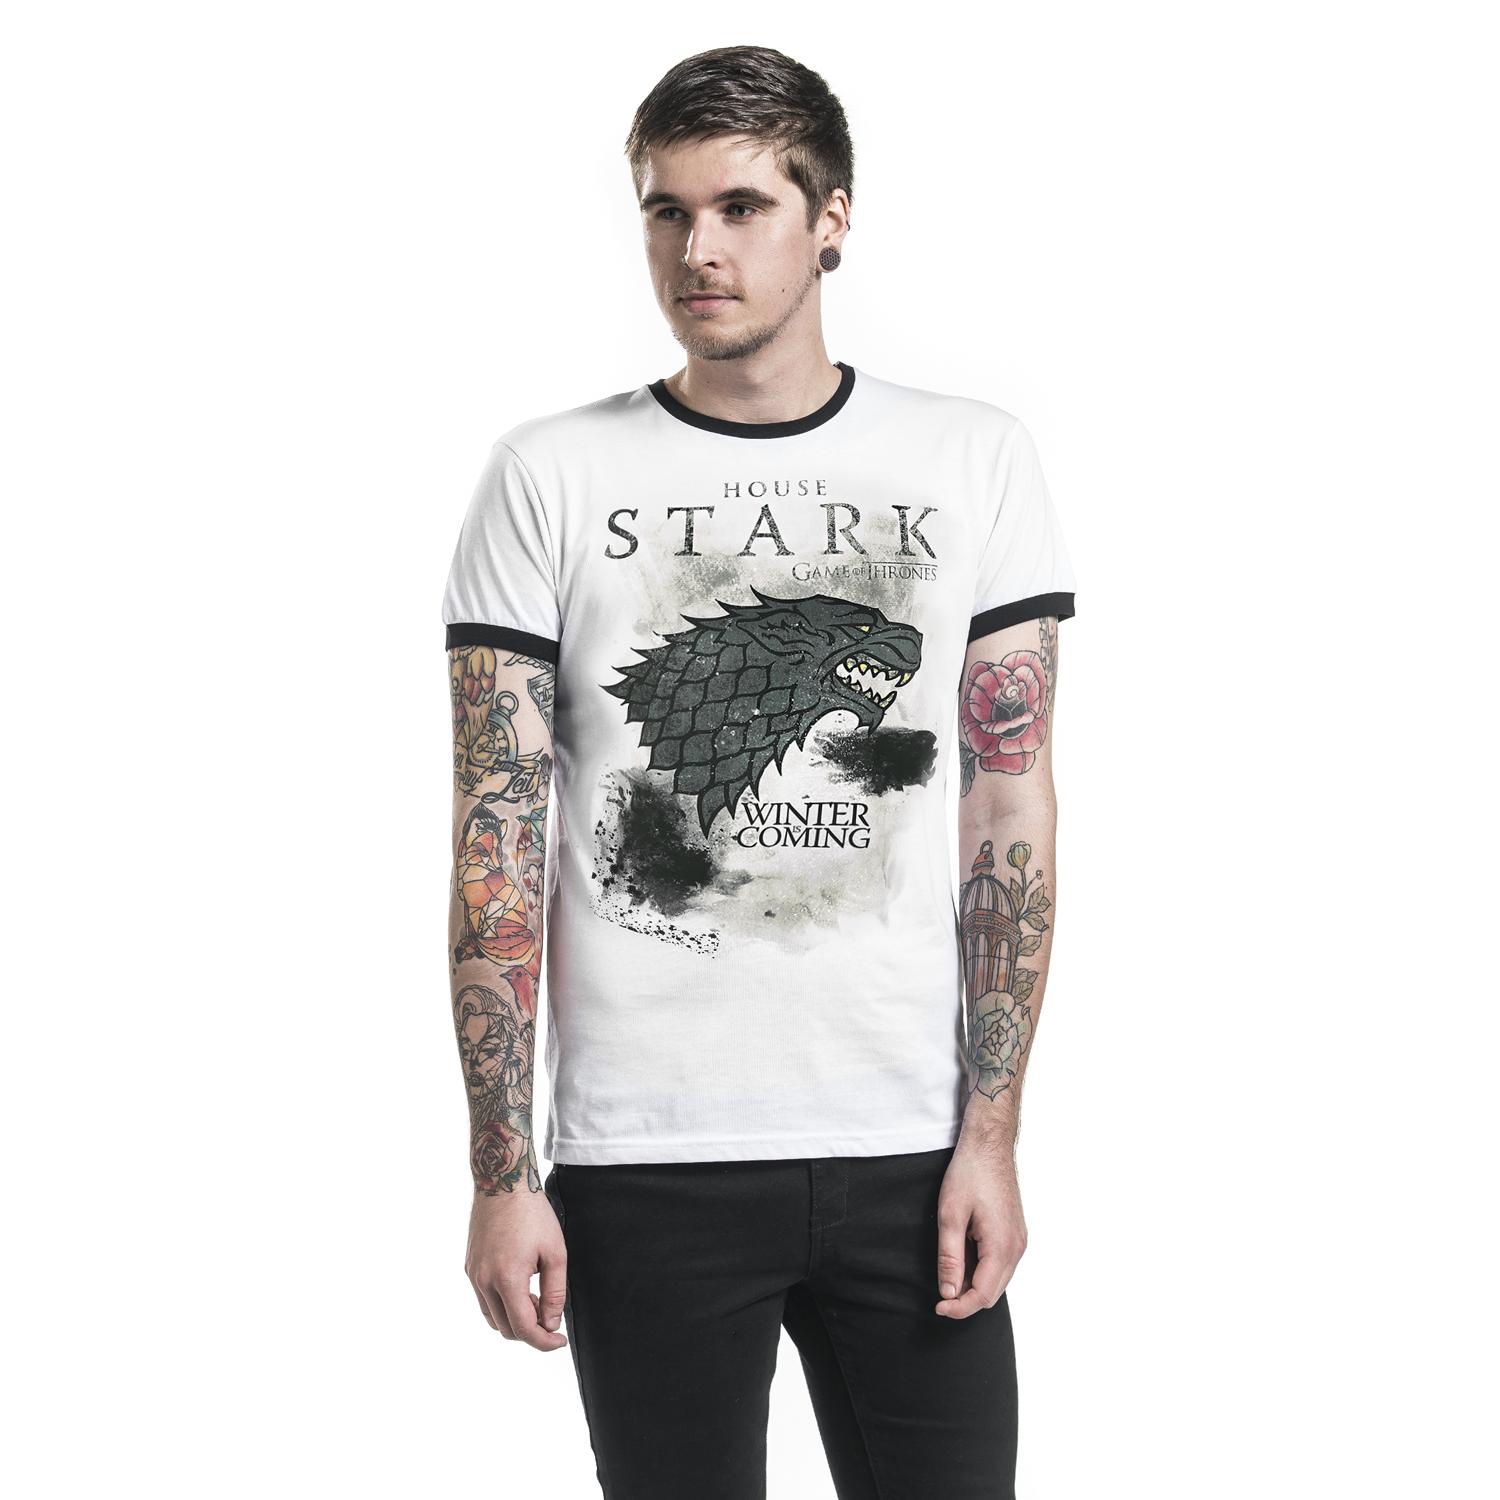 Stark Storm T-shirt Design tee t-sghirt